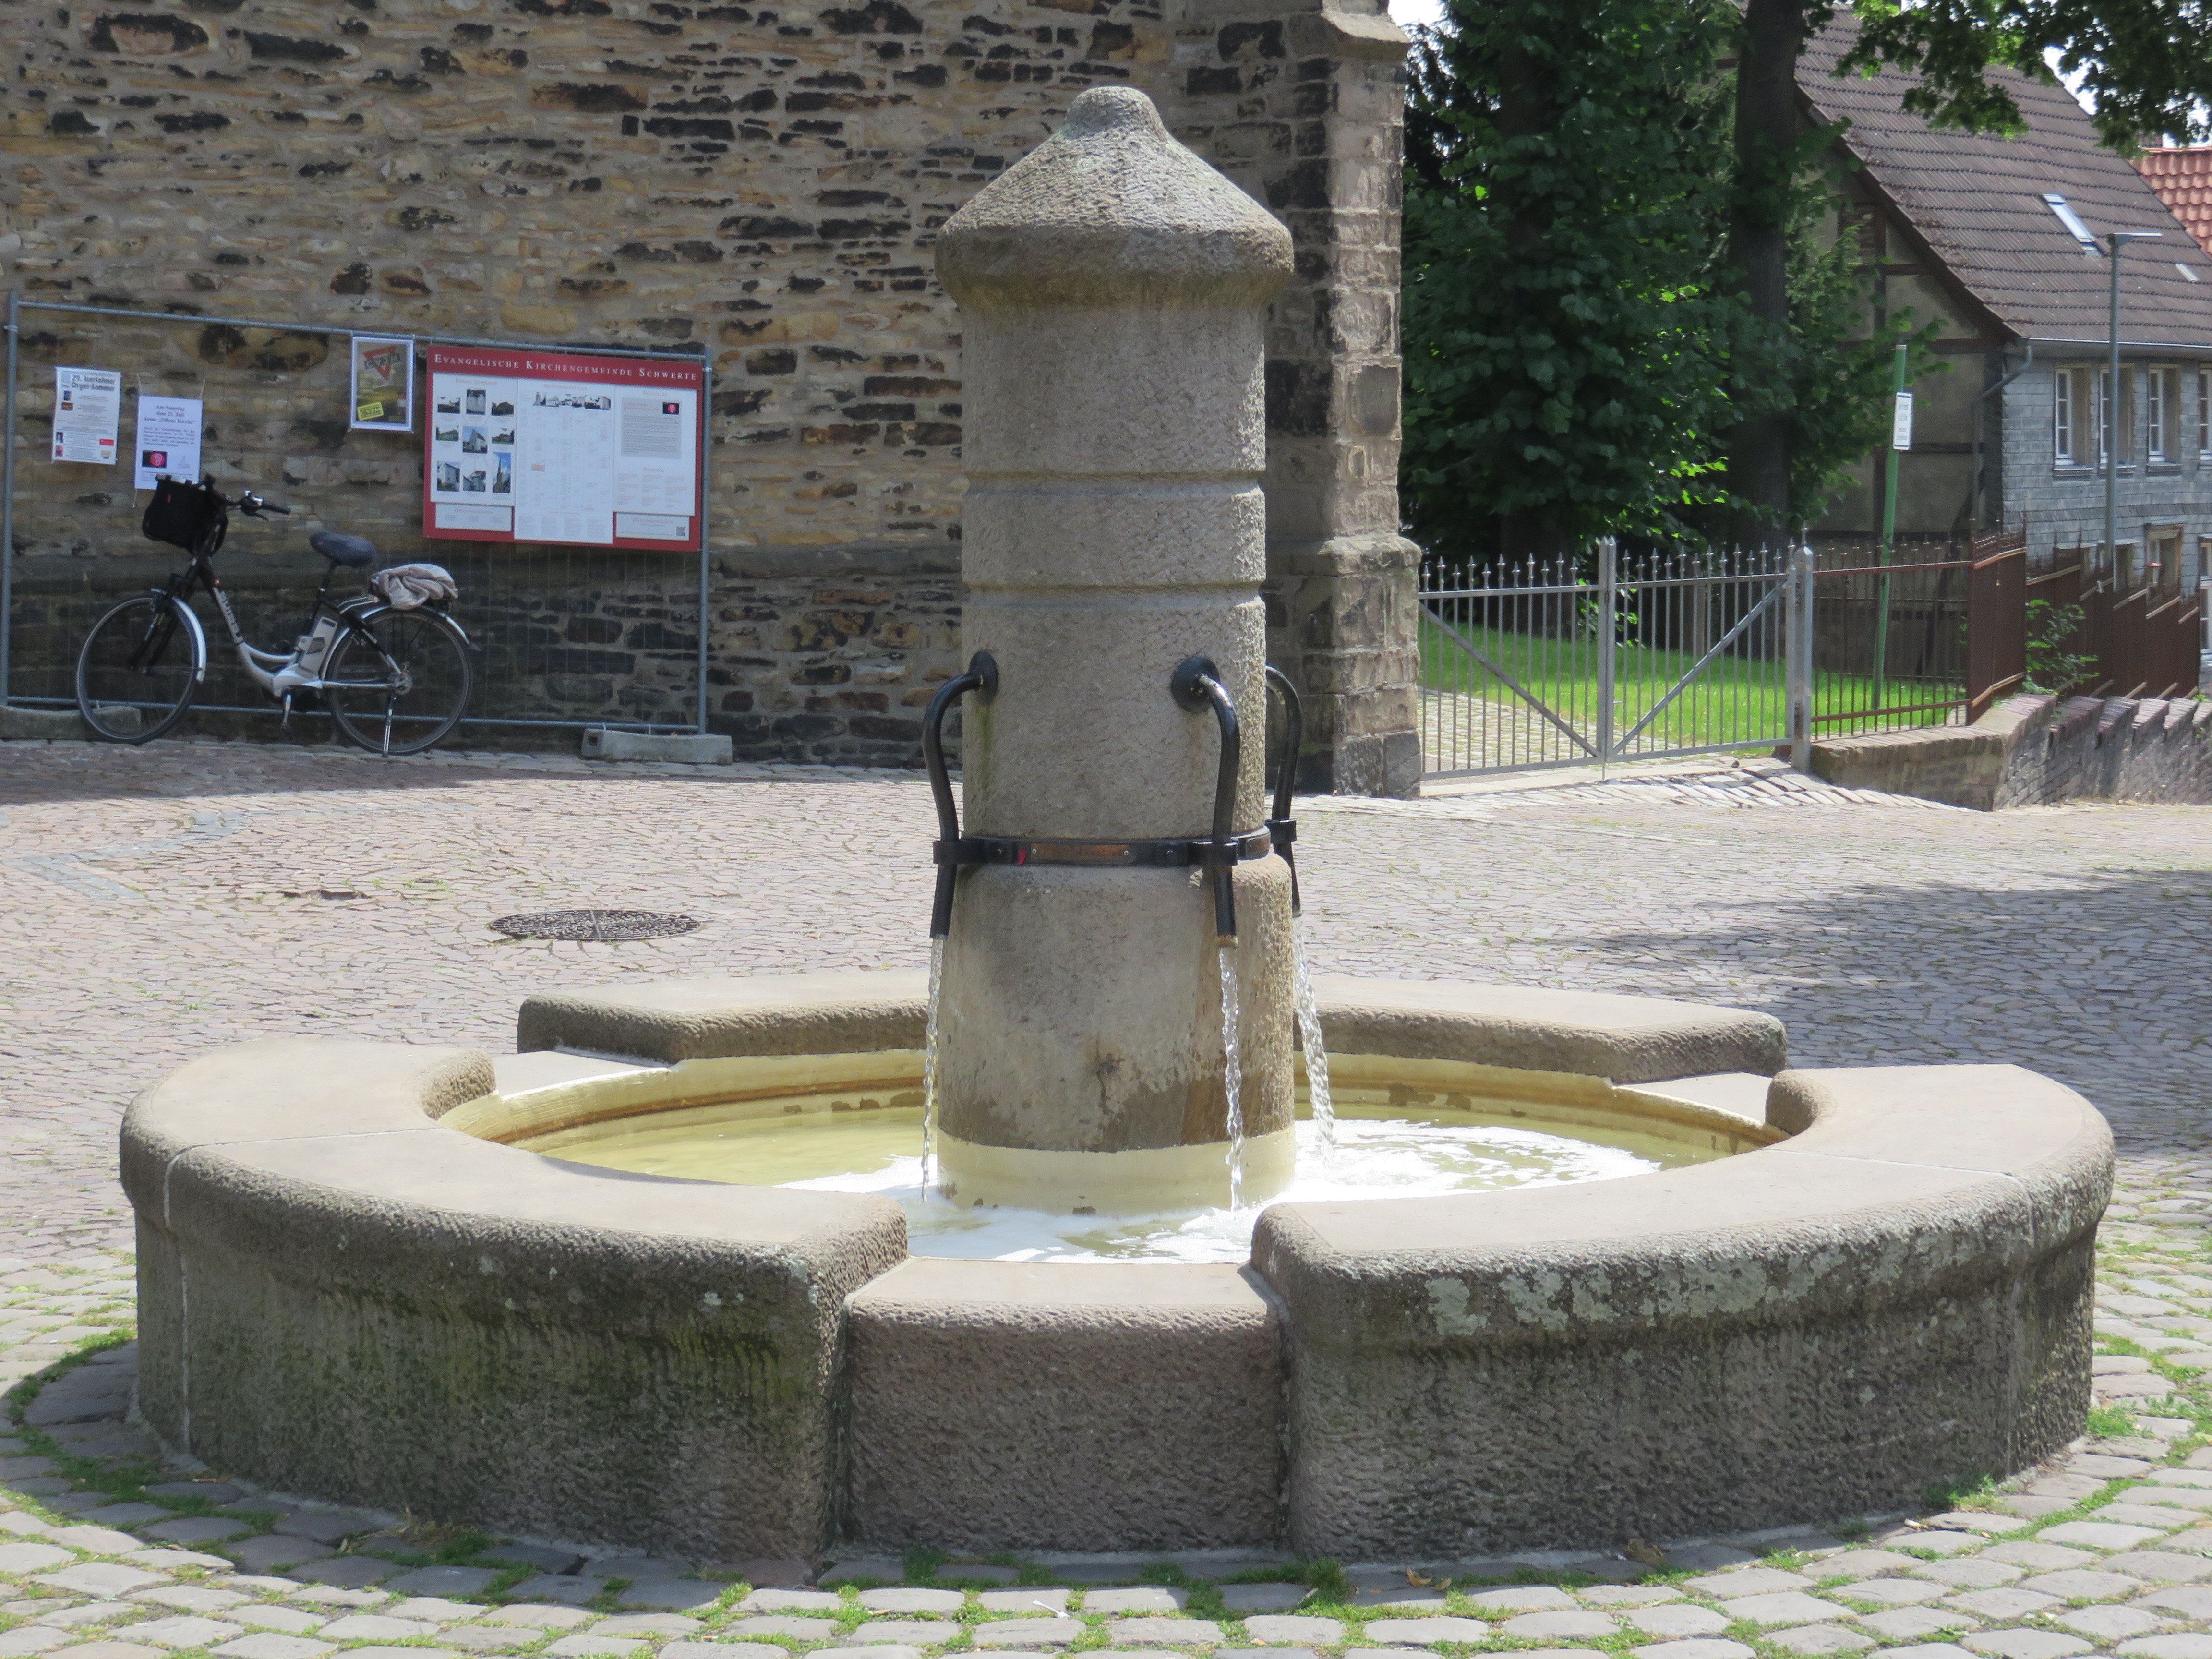 Brunnen vor der Kirche